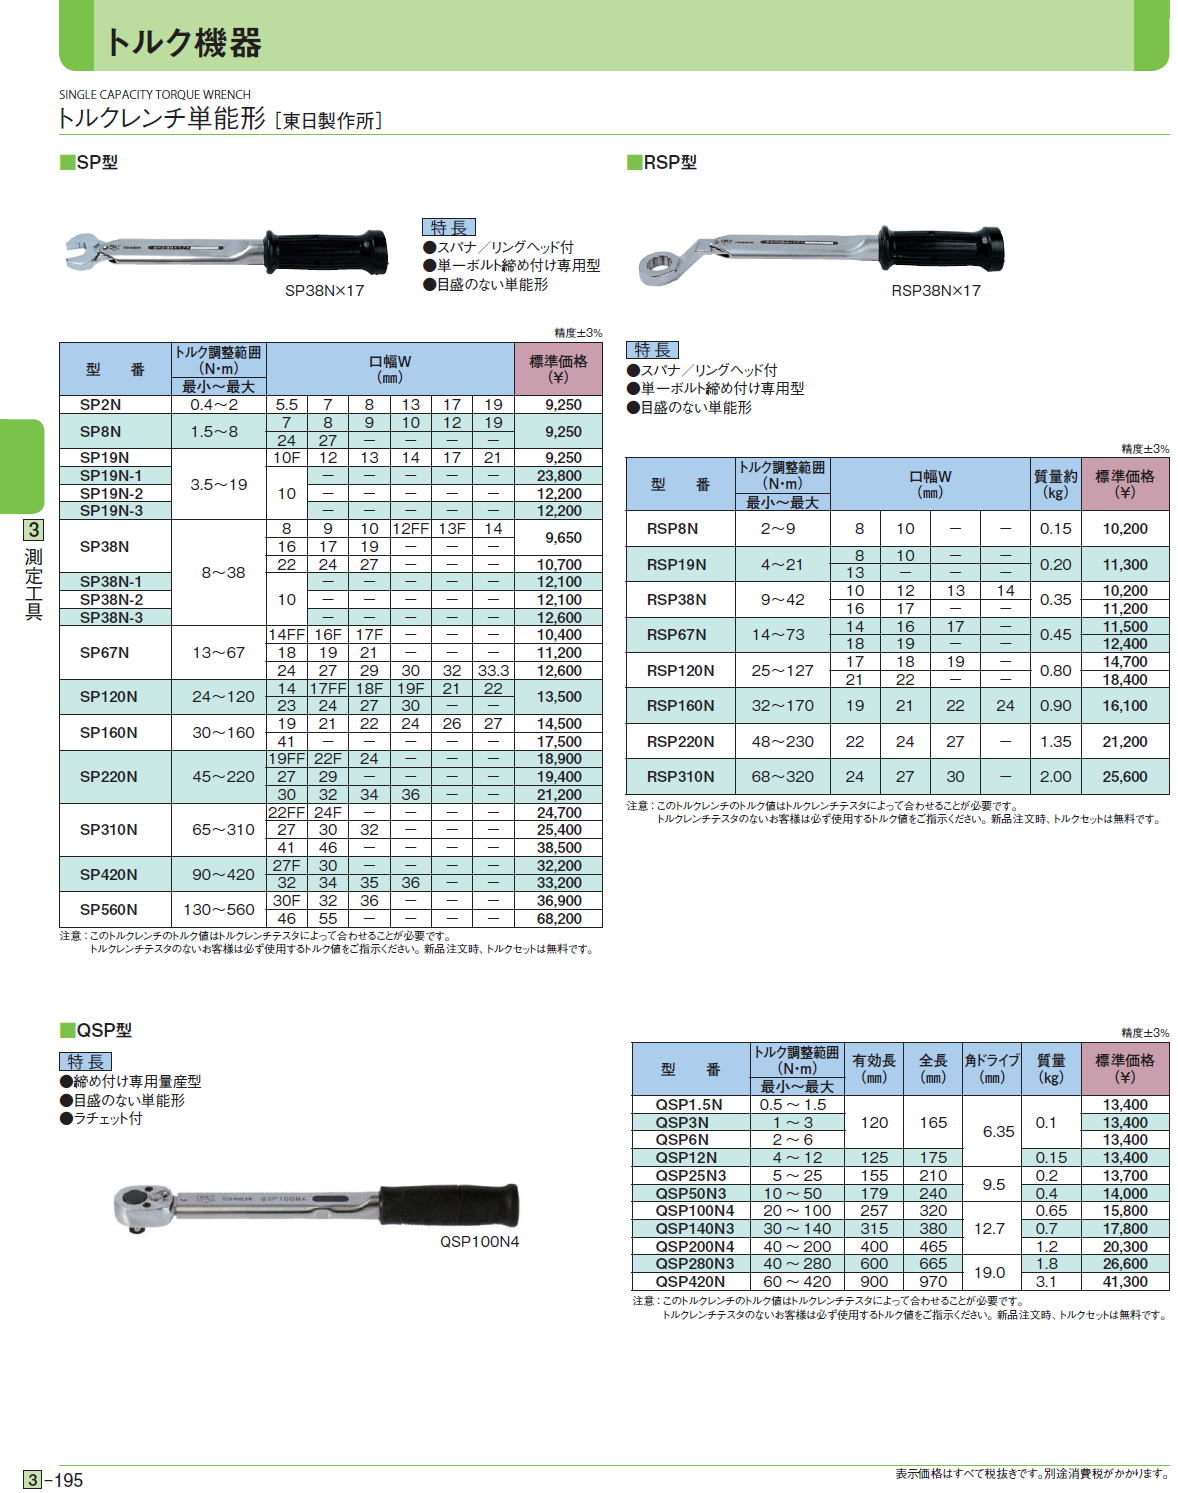 品】東日製作所 単能形トルクレンチ QSP100N4 / IT861FRQ92IM - 工具